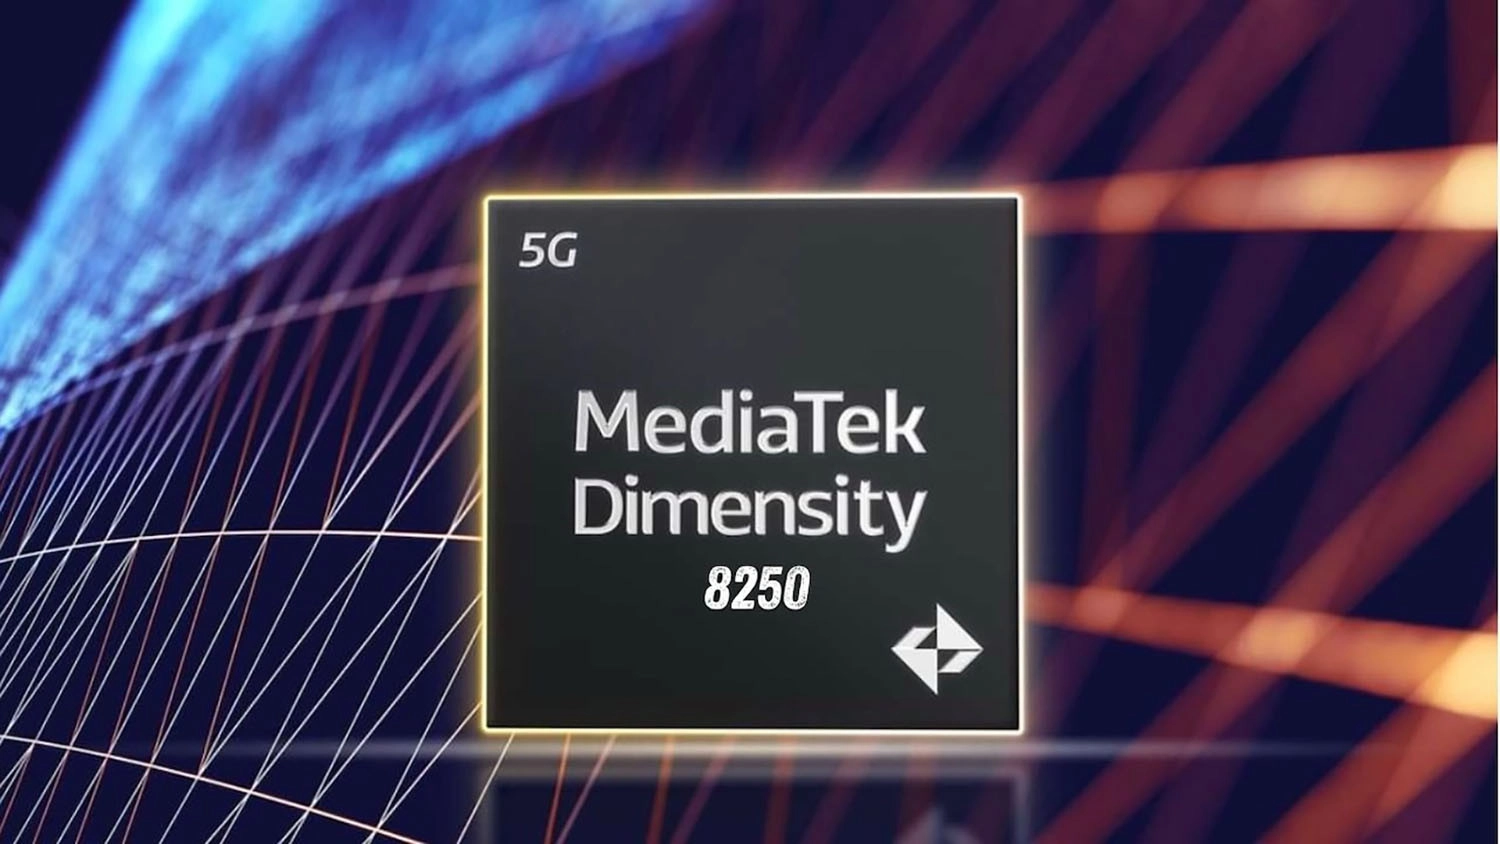 Đánh giá hiệu năng Dimensity 8250: Nhân Cortex-A78 tốc độ 3.1 GHz